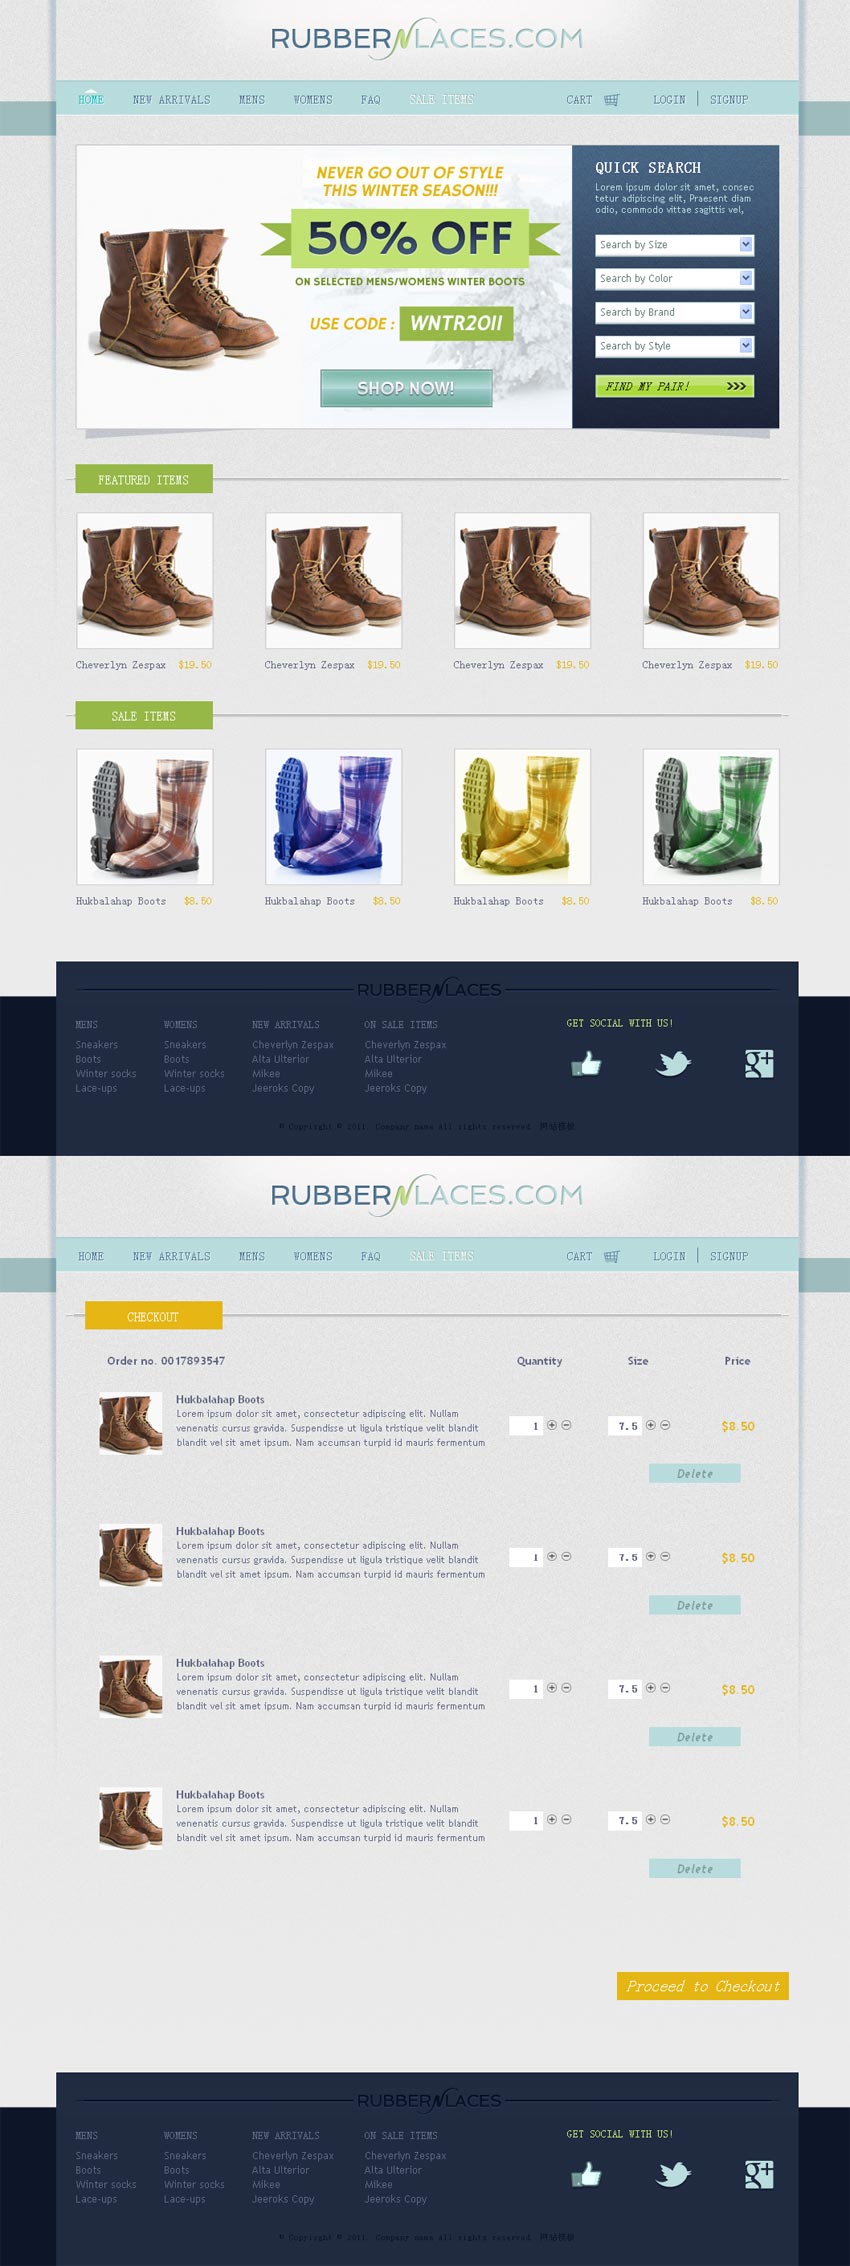 国外简洁的鞋子专门店网上购物商城模板html源码下载